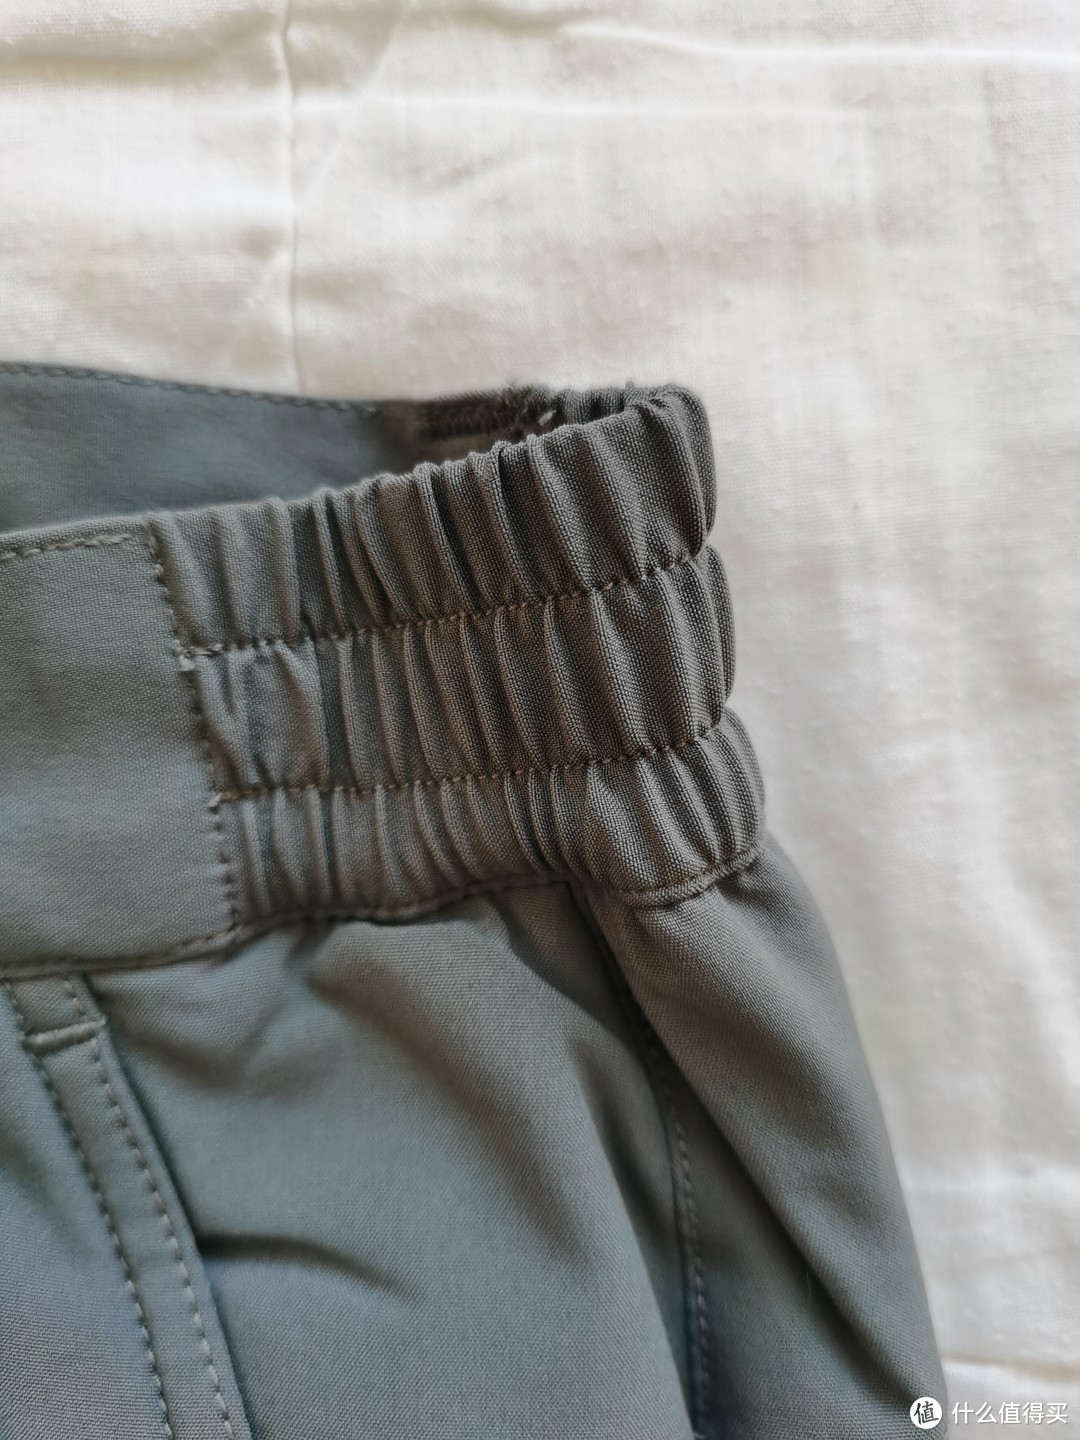 极星户外软壳裤—第五条软壳裤